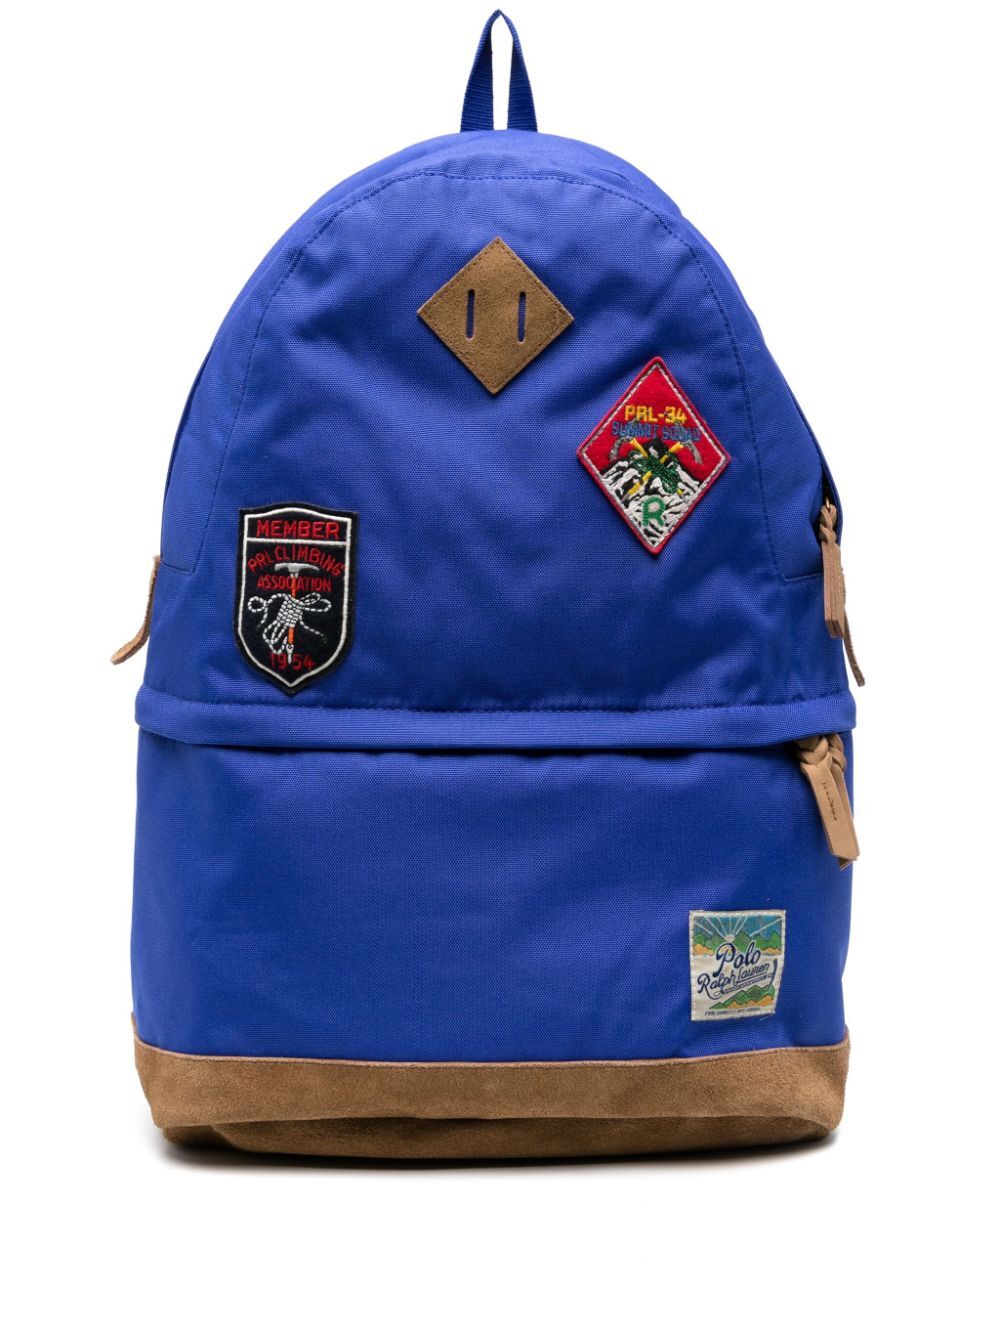 Ranger Large Backpack